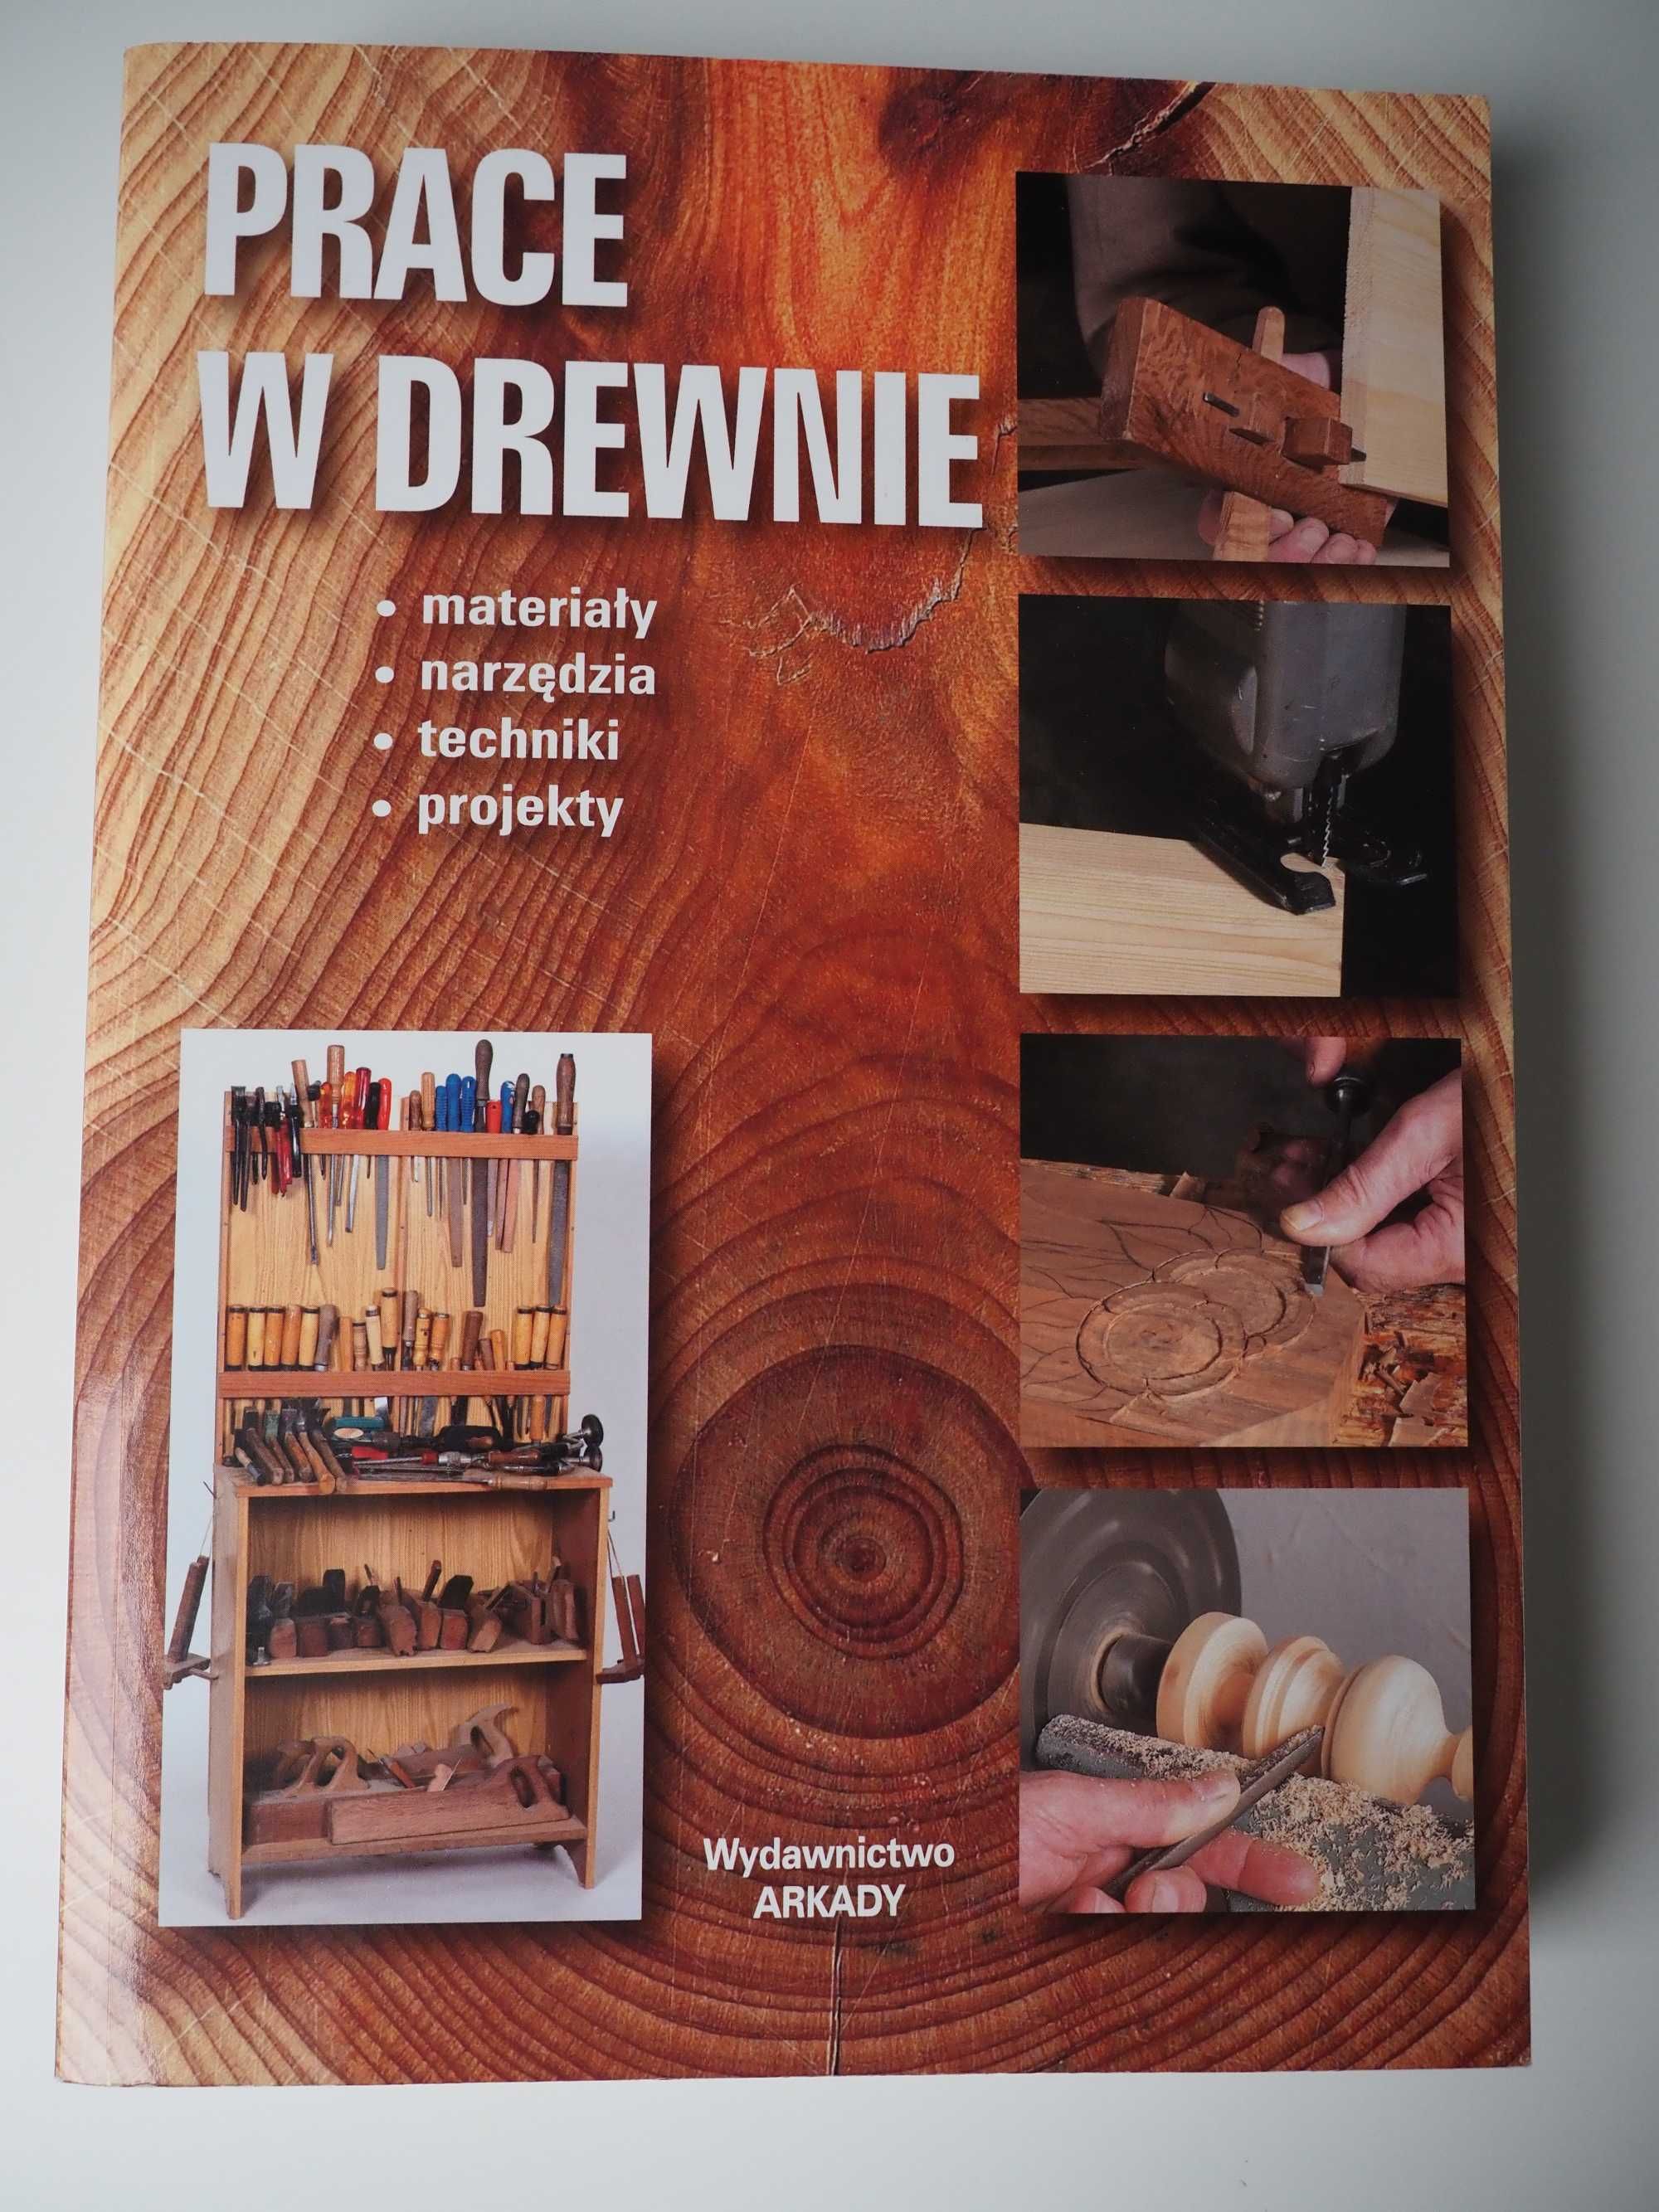 Nowa książka "Prace w drewnie" ARKADY